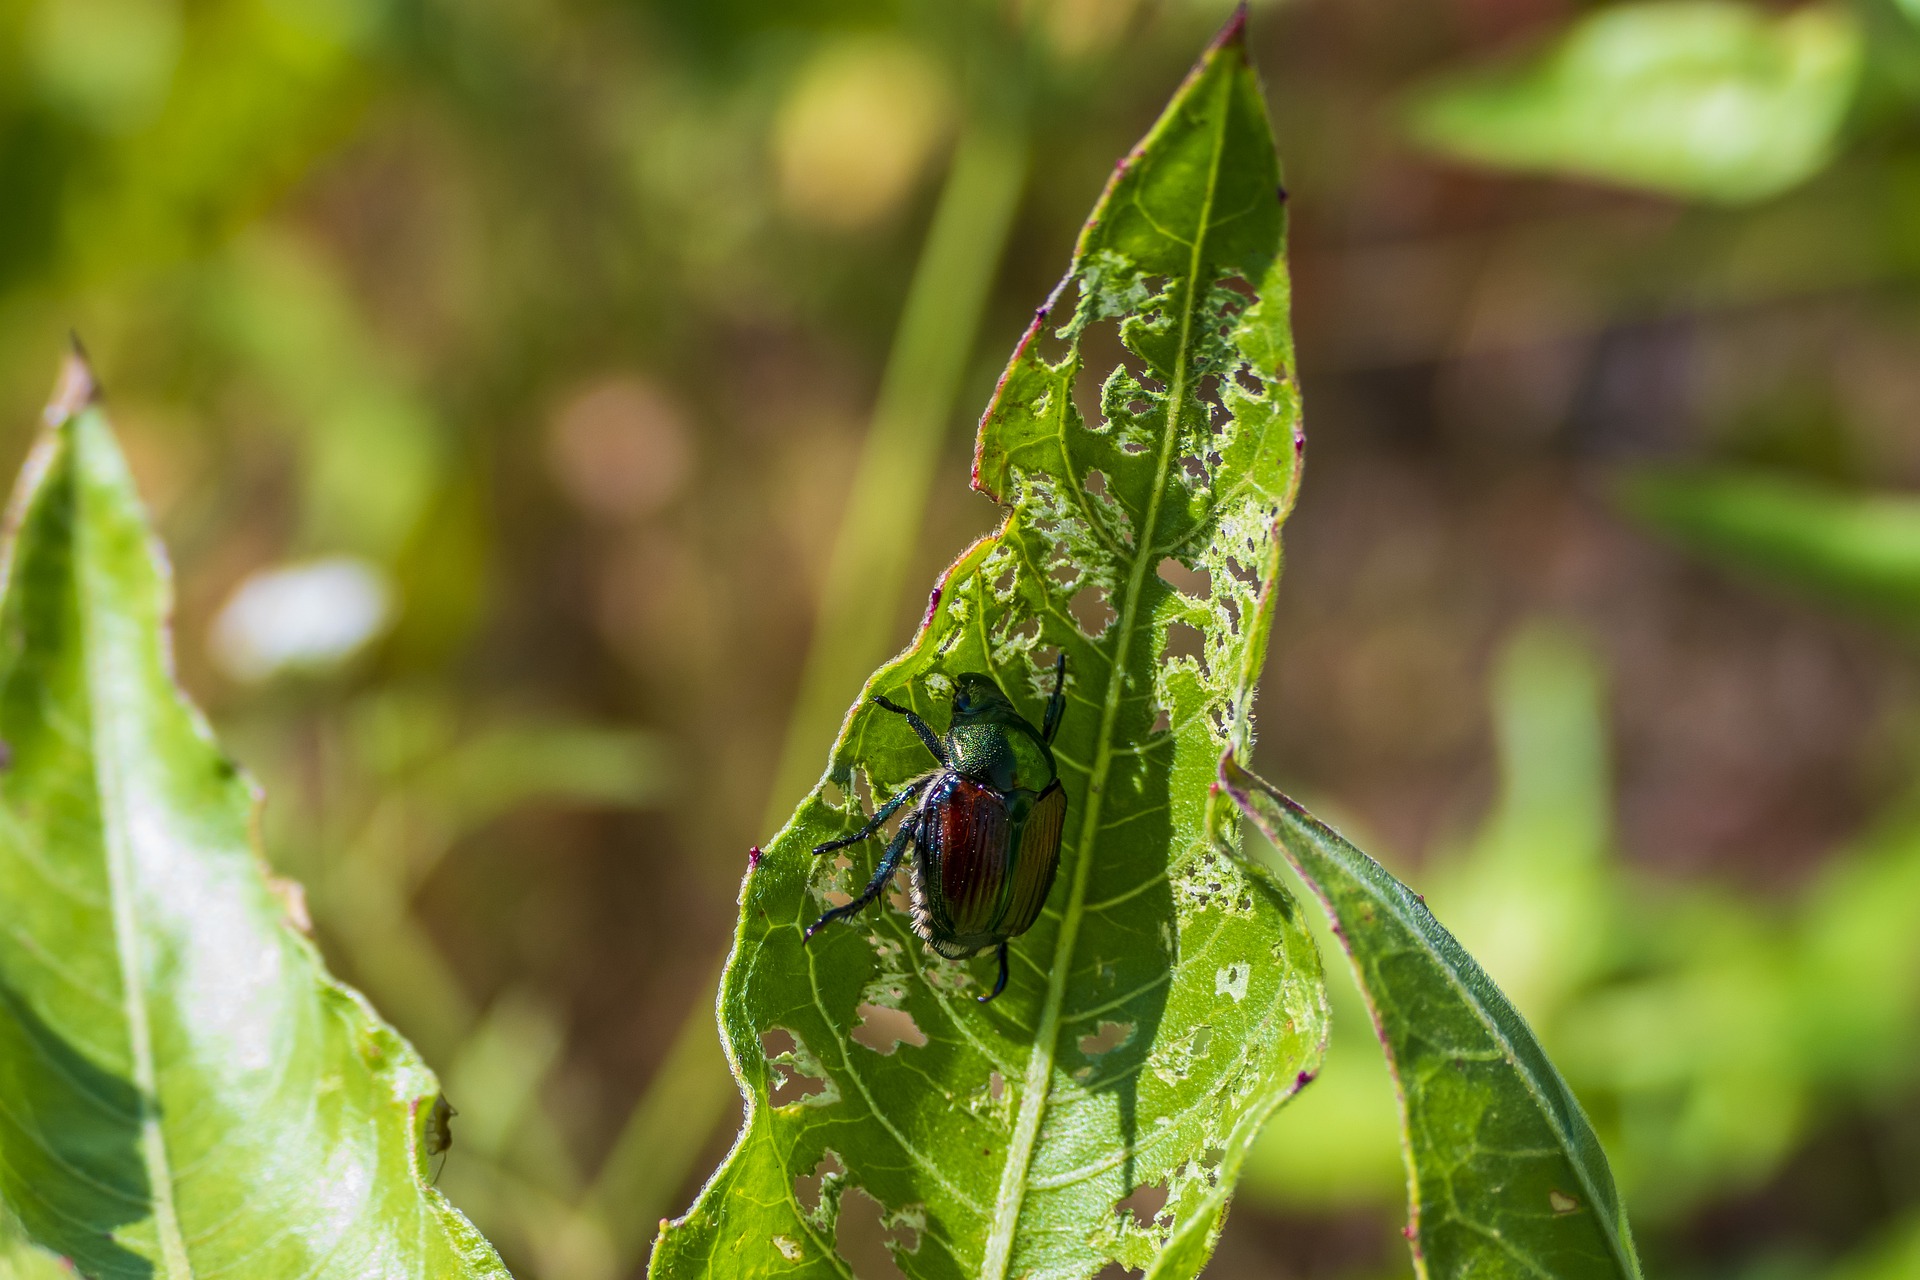 Japanese beetle on leaf.